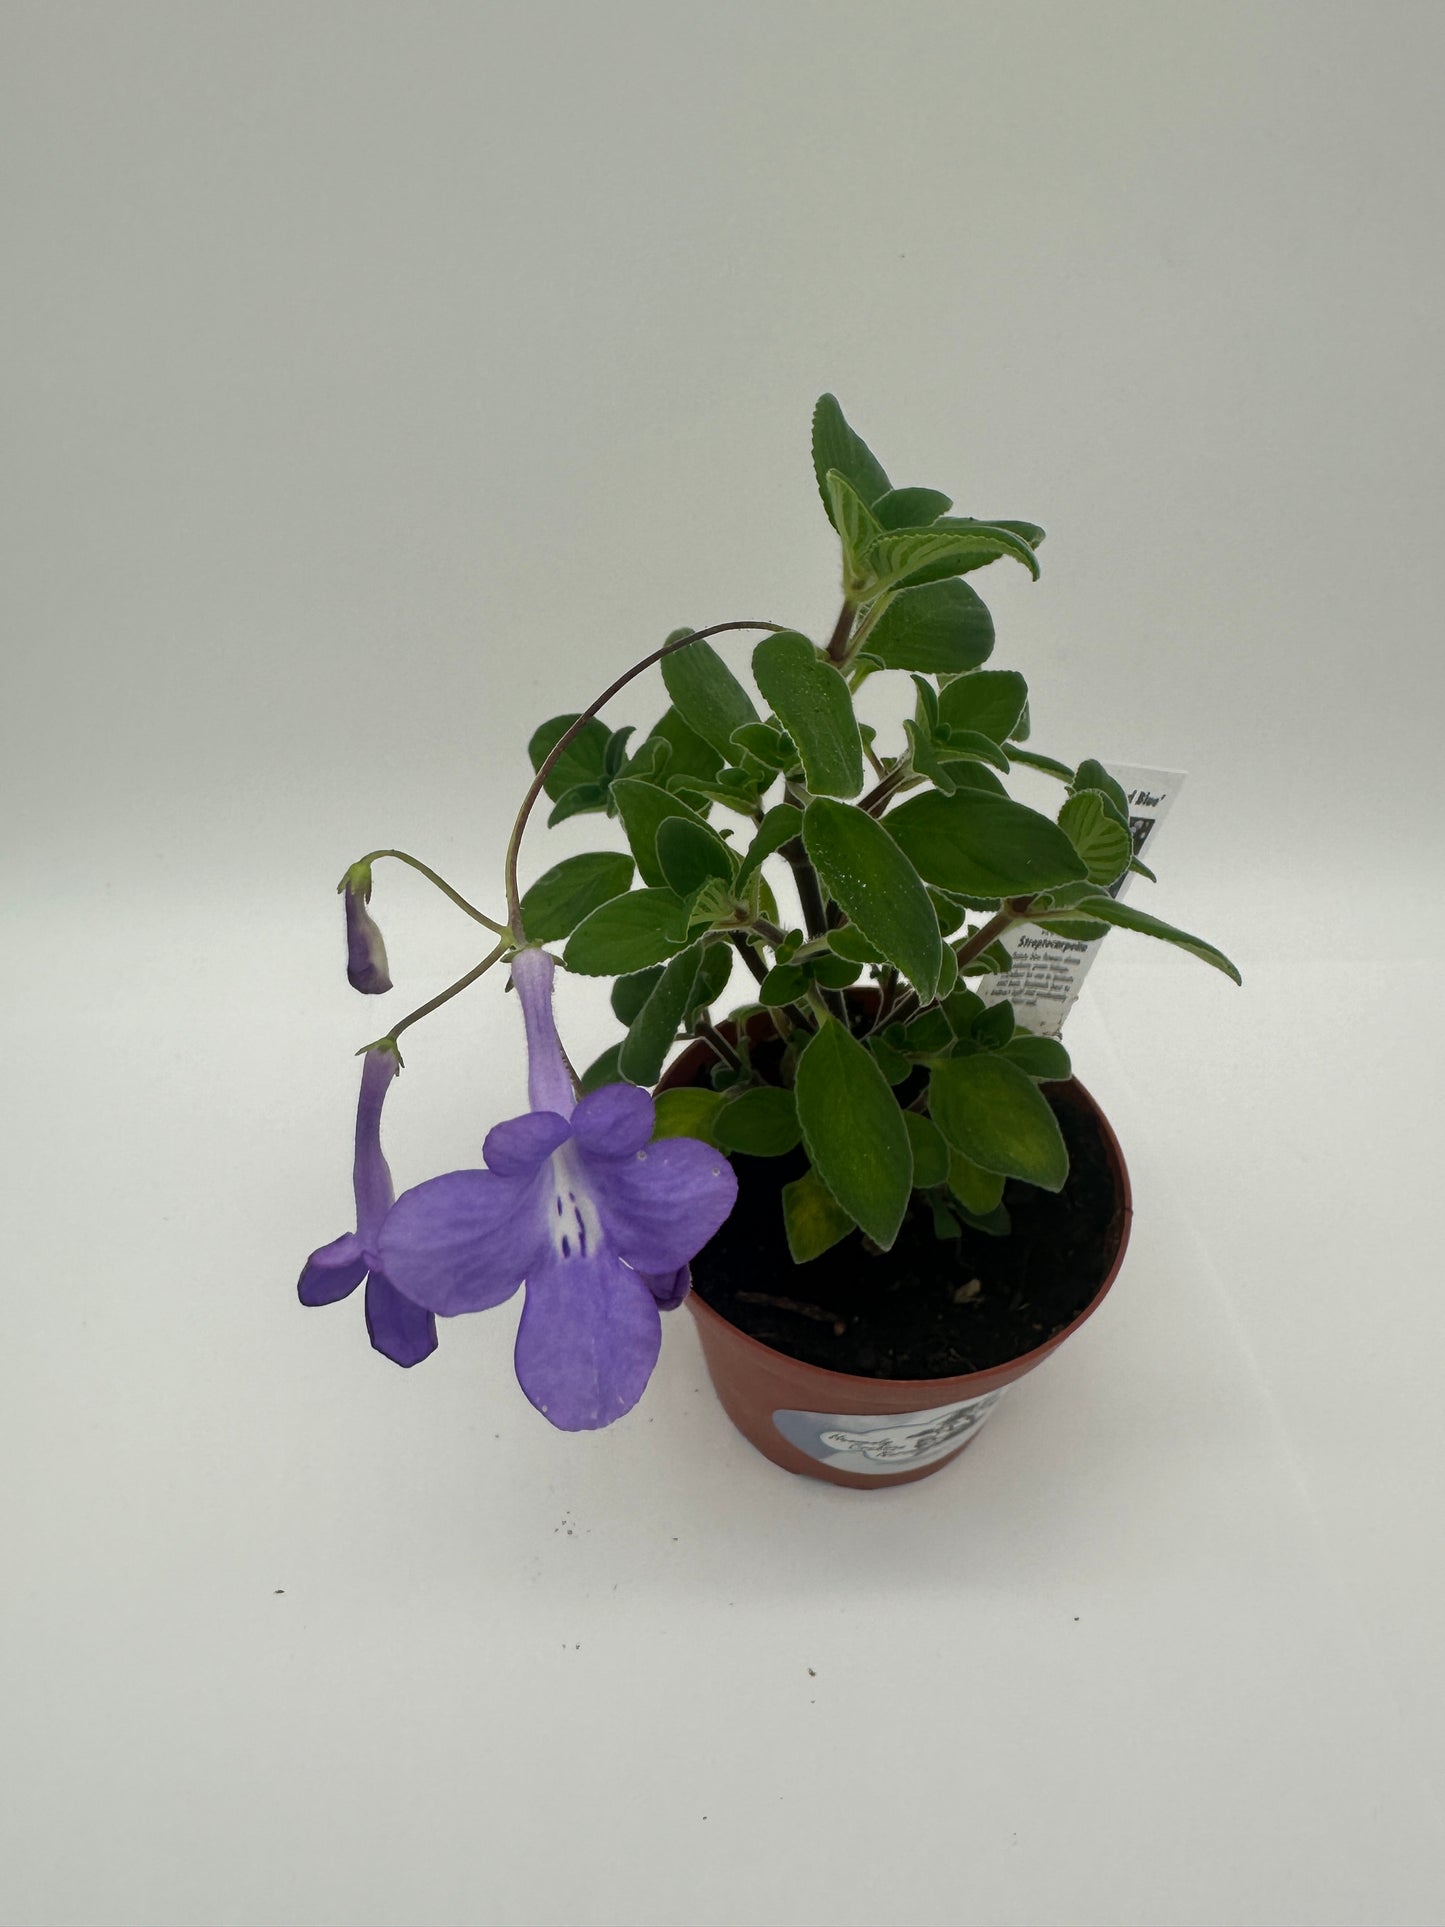 Streptocarpella Concord Blue - Live Plant 4"